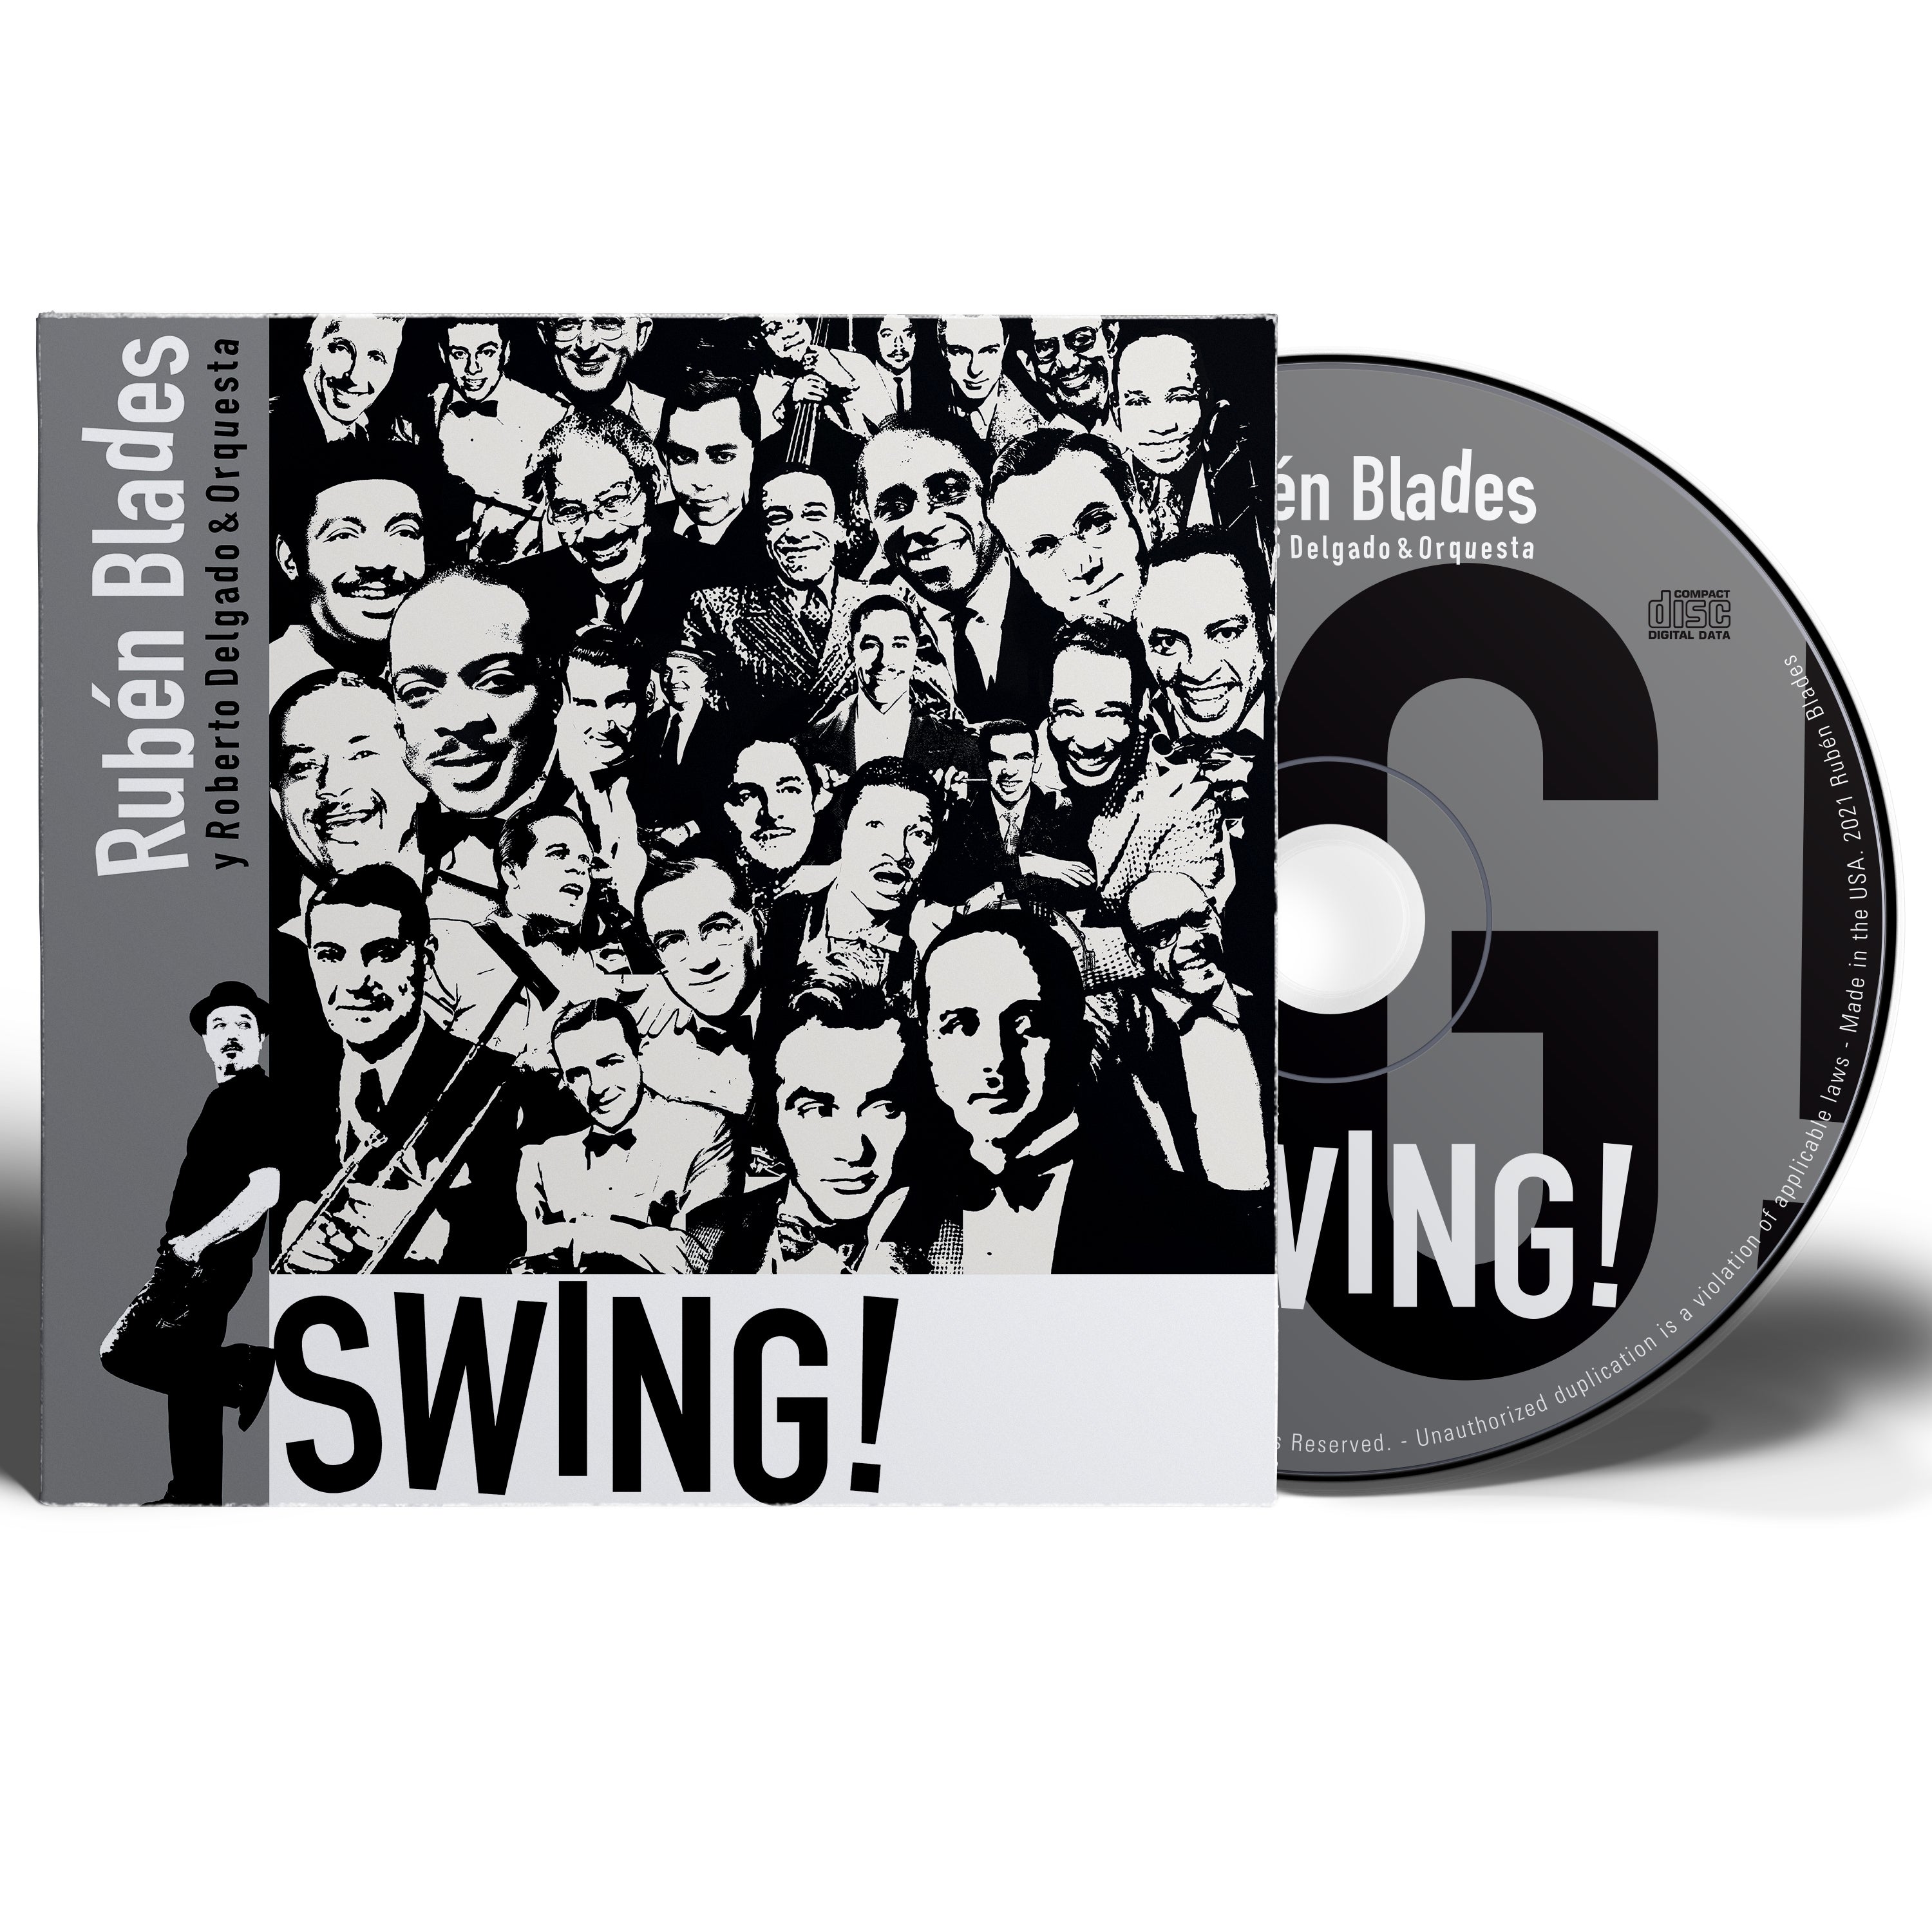 Rubén Blades con Roberto Delgado y Orquesta - "SWING! CD